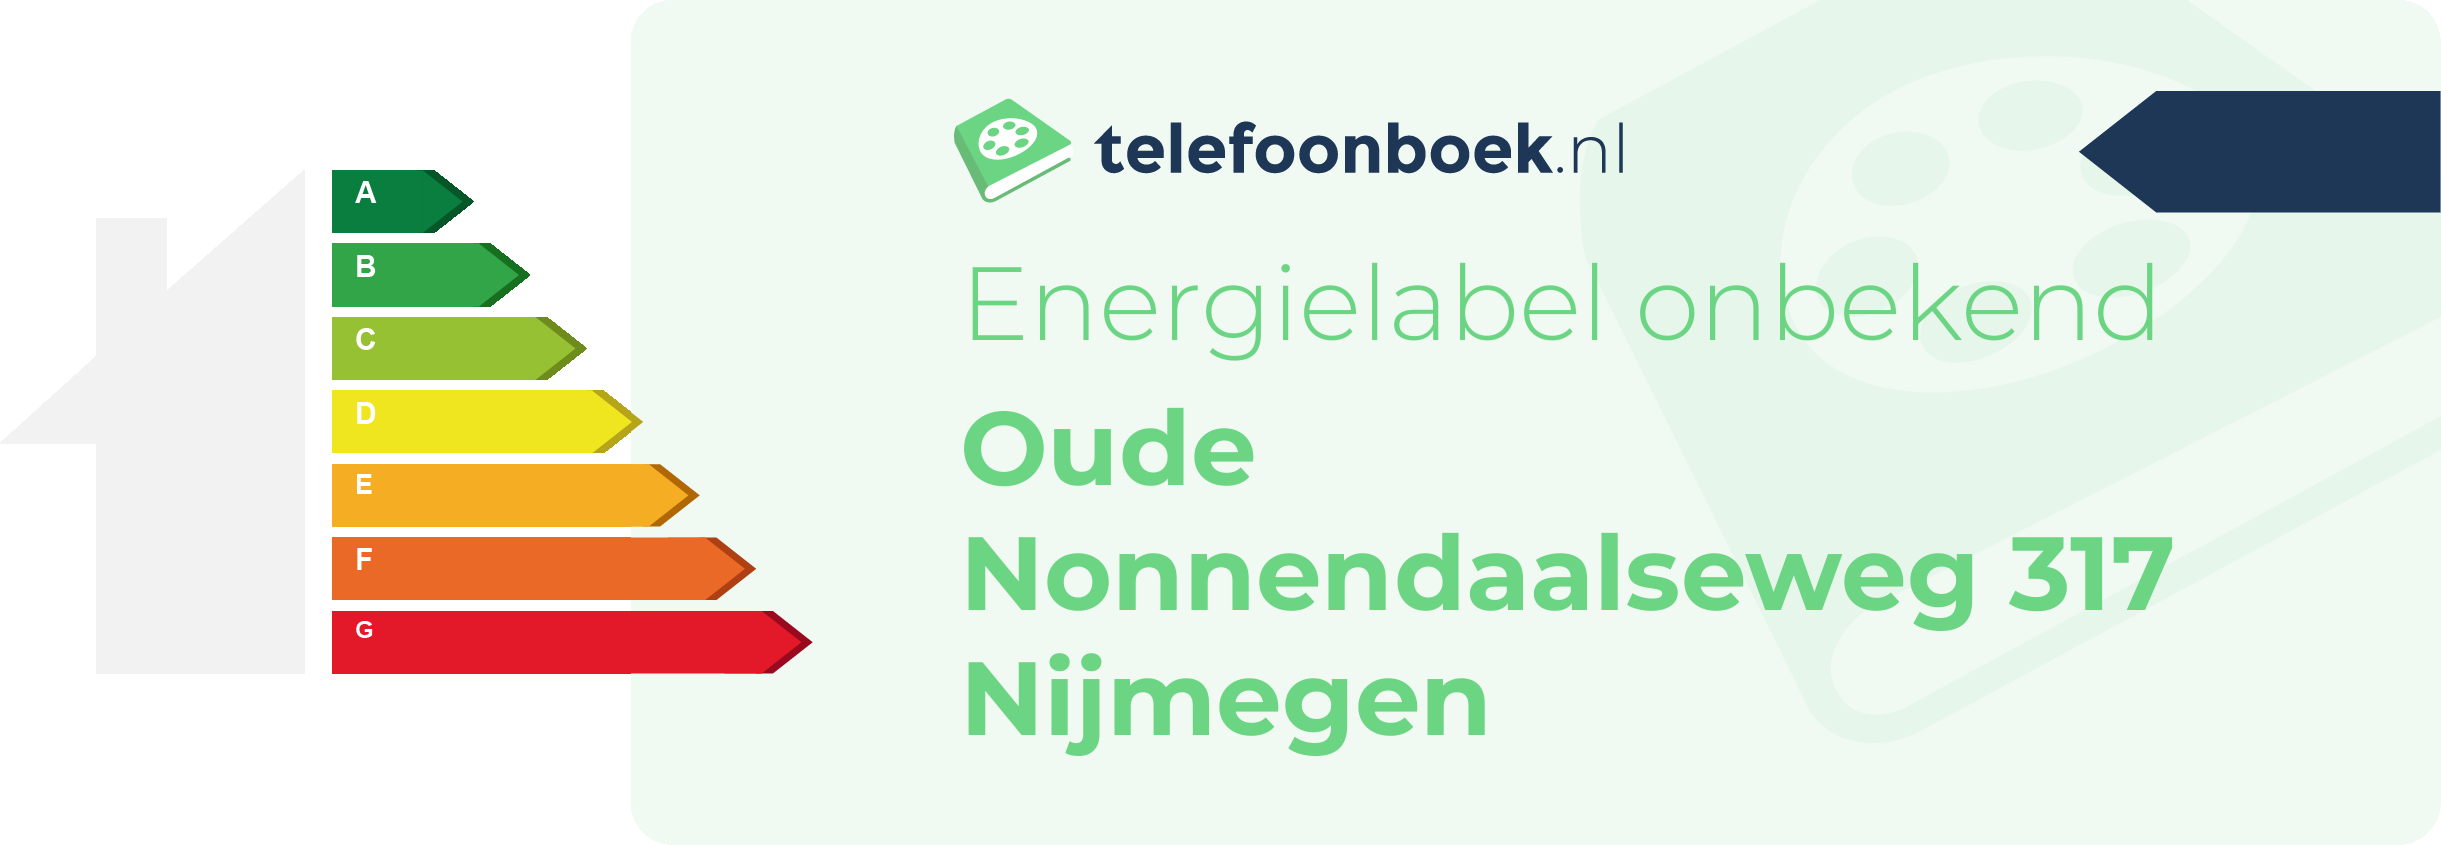 Energielabel Oude Nonnendaalseweg 317 Nijmegen